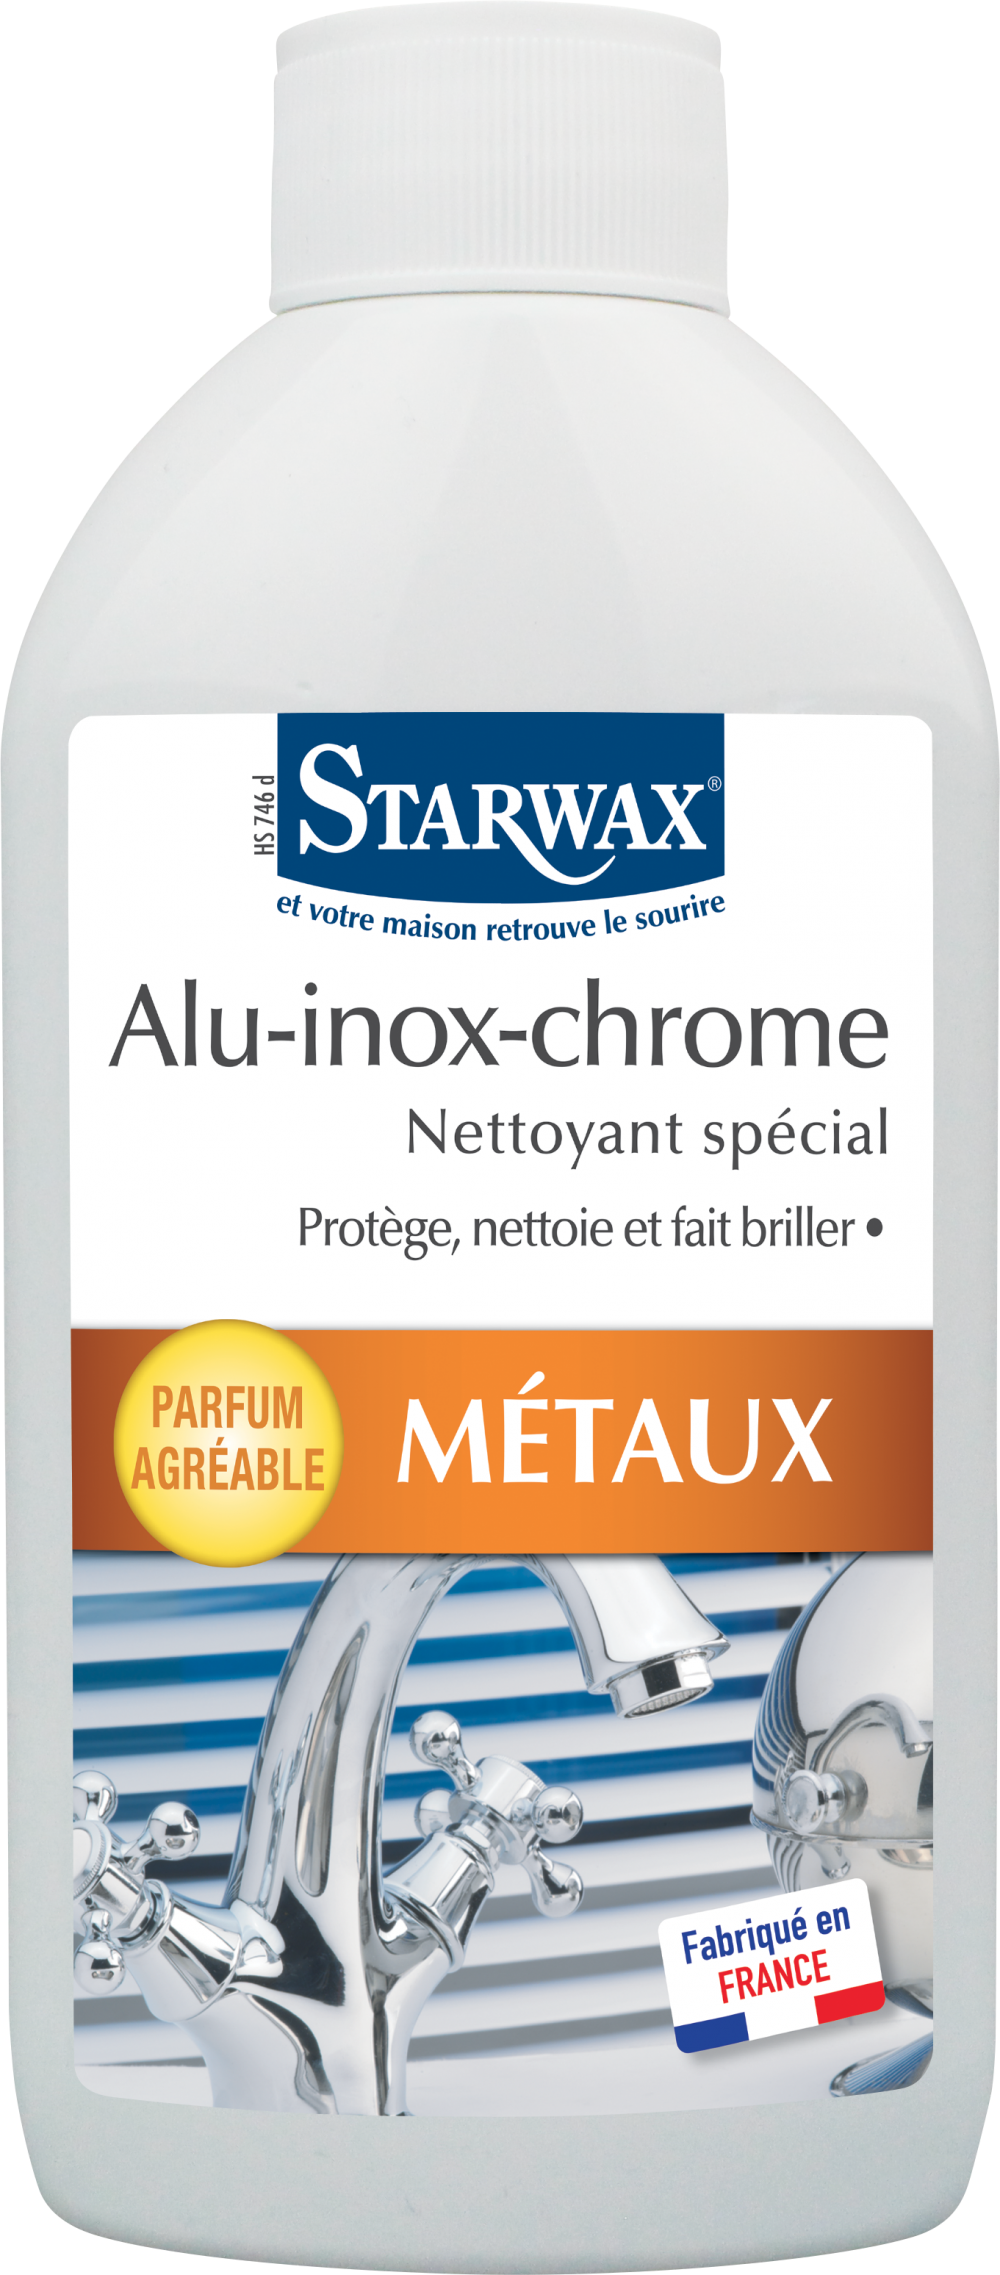 Detergente per alluminio, acciaio inox e cromo STARWAX Metals 0,2 l